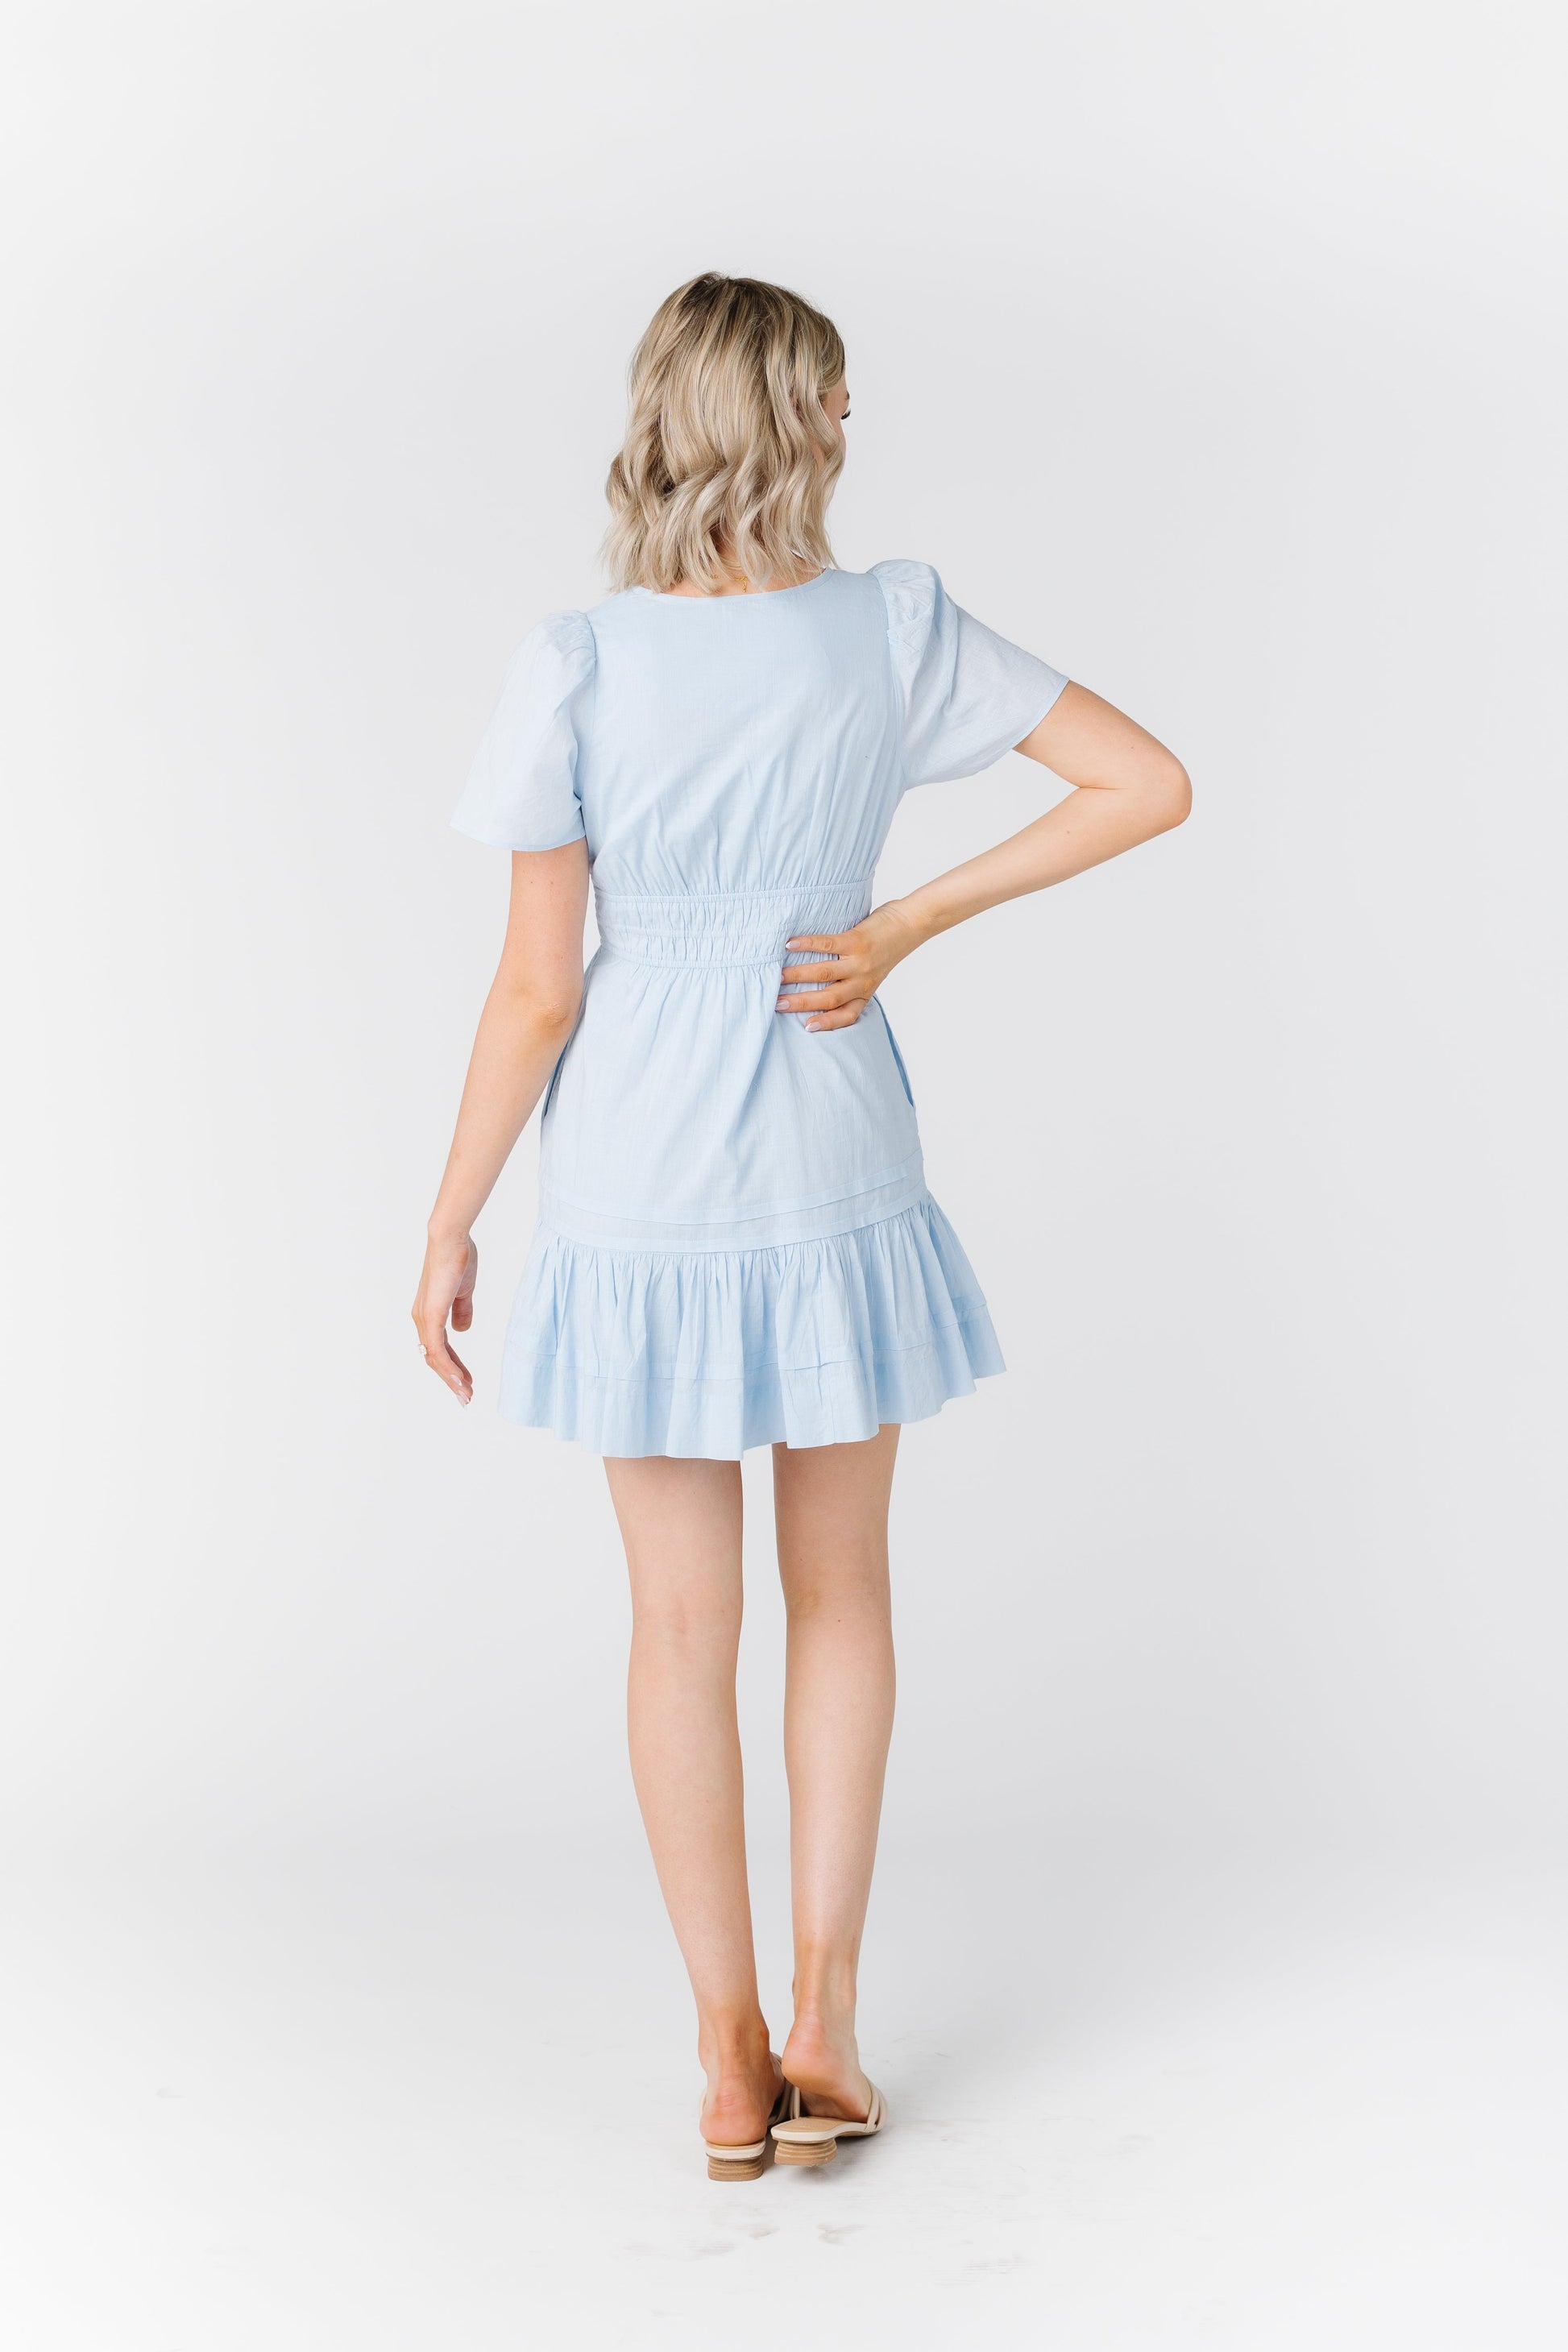 Citrus Shae Dress Mini Dress WOMEN'S DRESS Citrus 